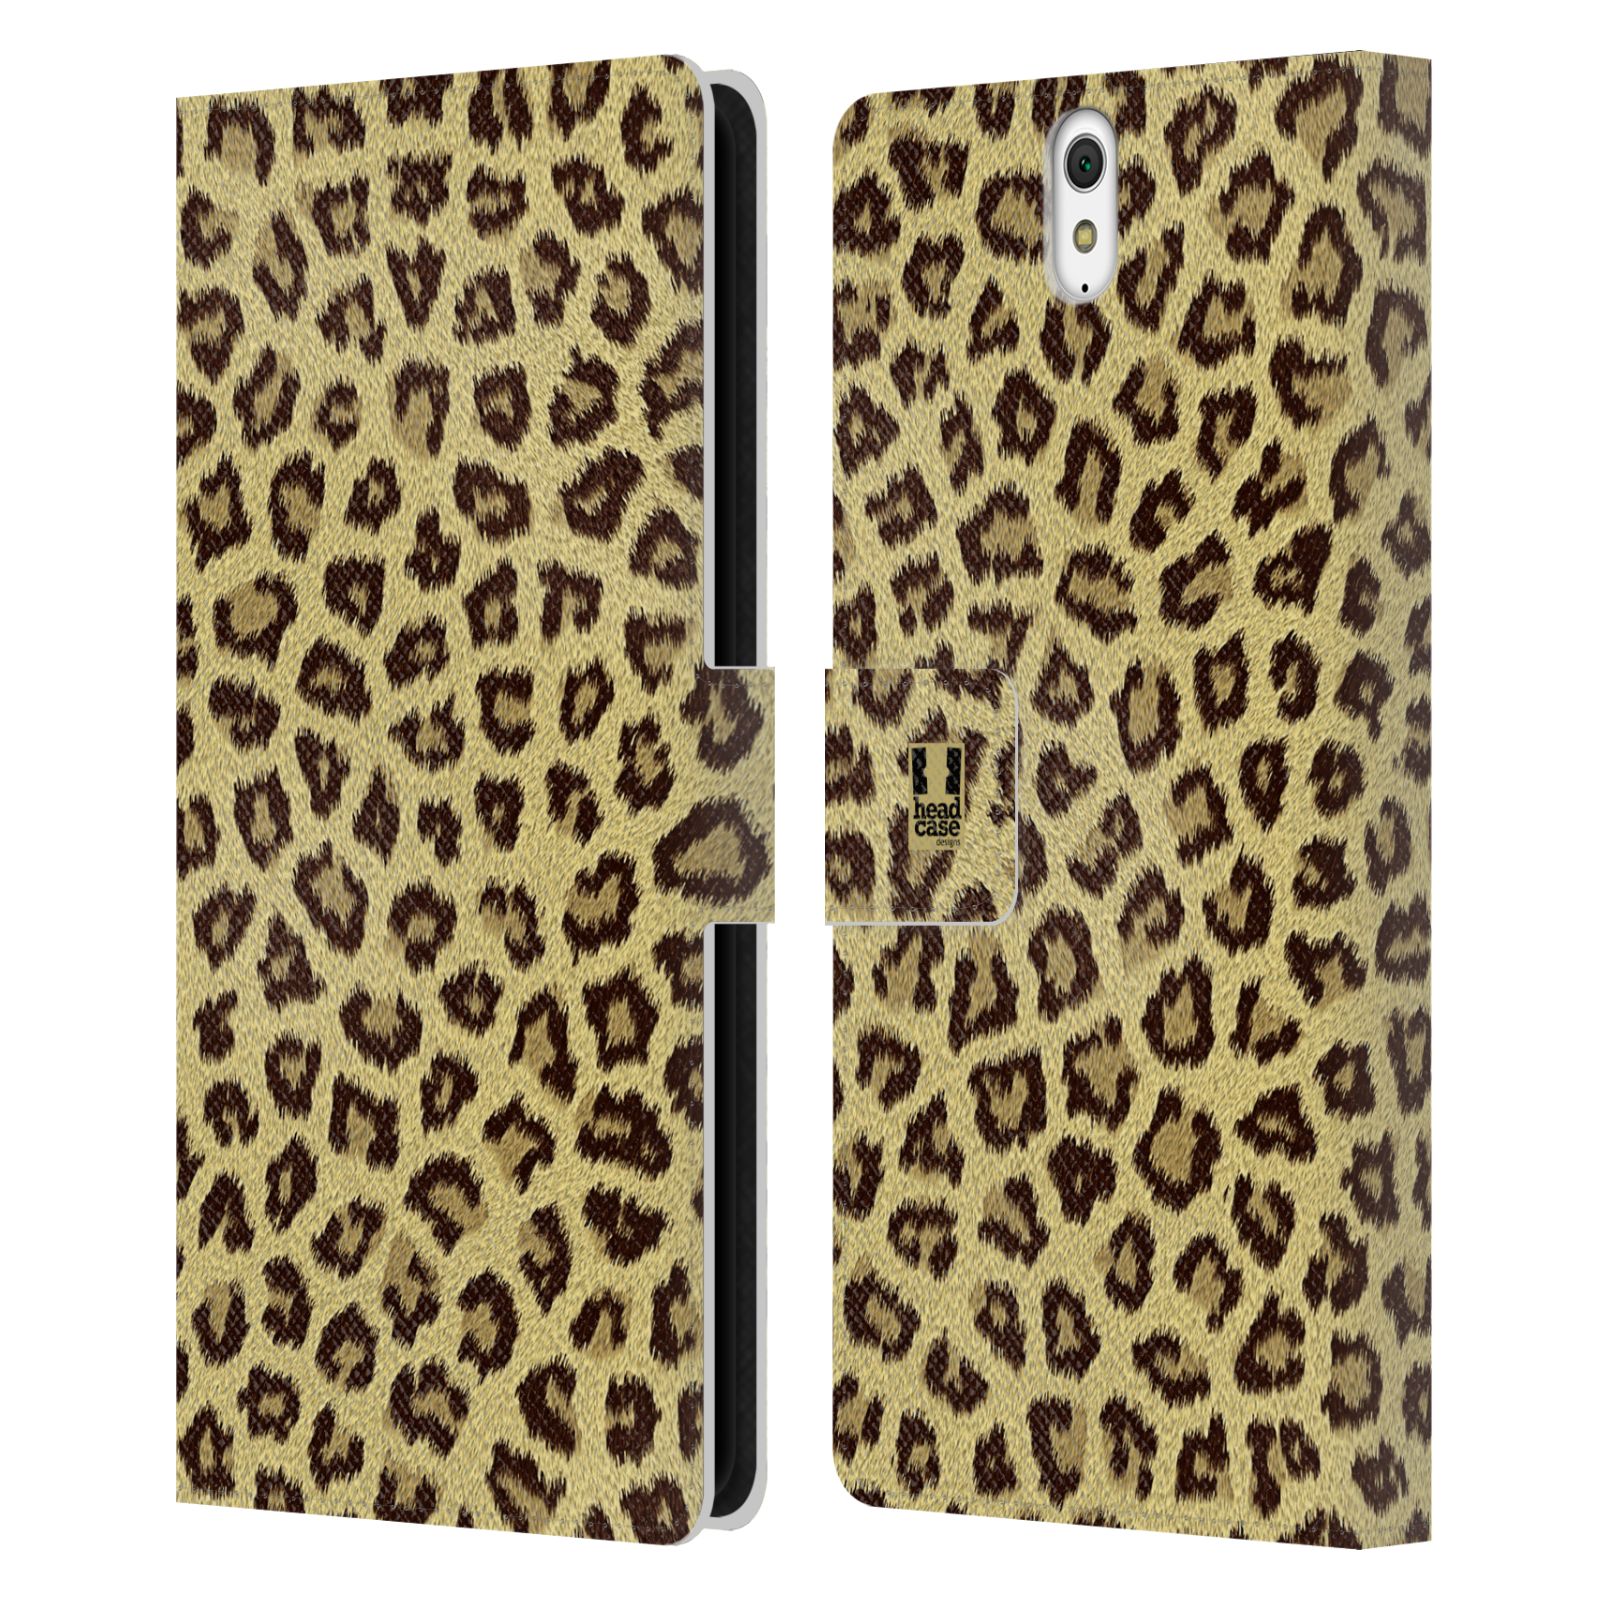 HEAD CASE Flipové pouzdro pro mobil SONY XPERIA C5 Ultra zvíře srst divoká kolekce jaguár, gepard